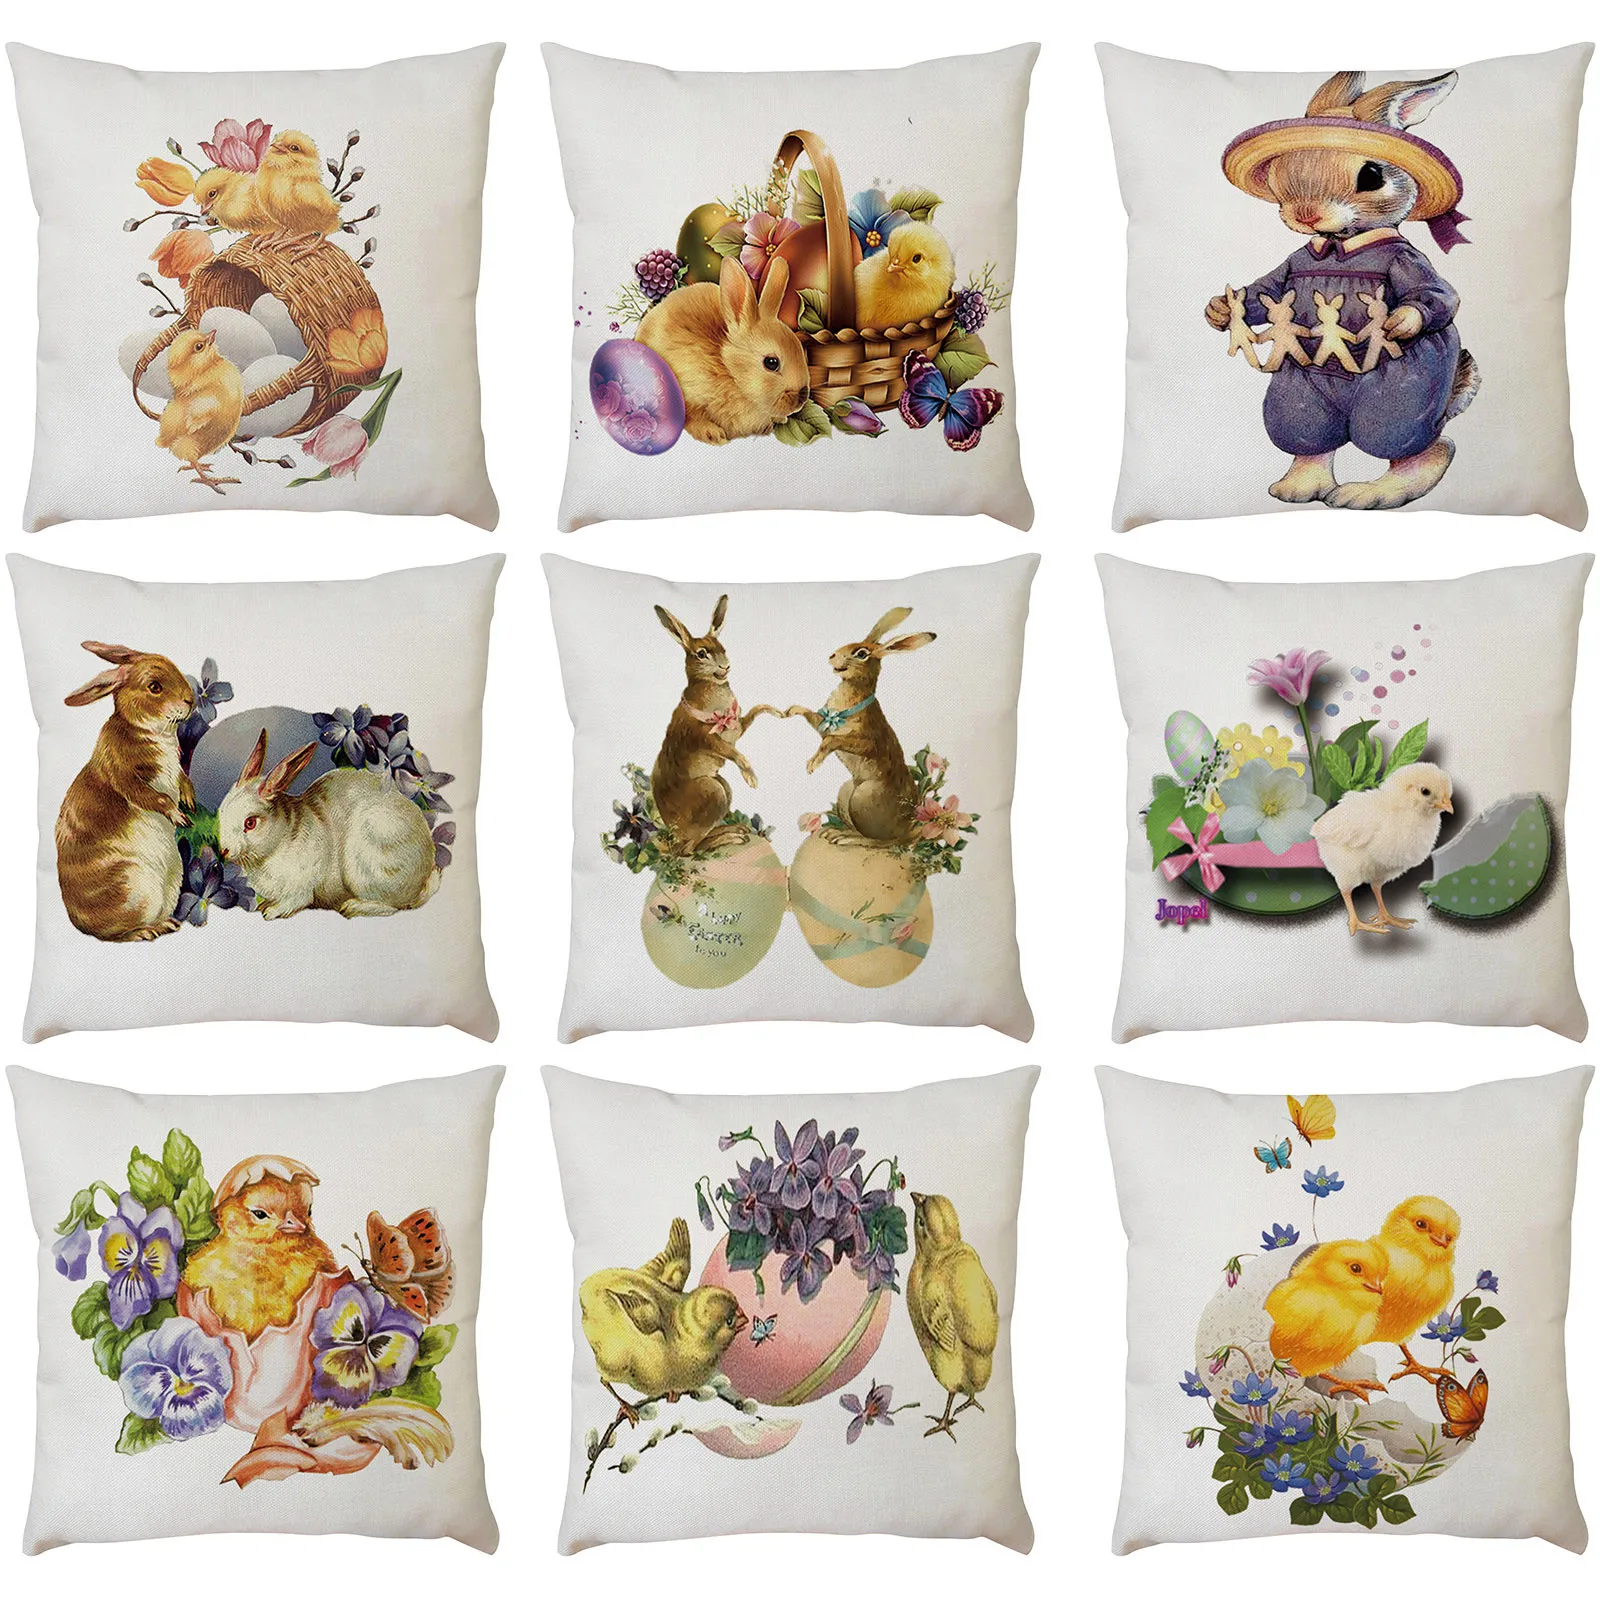 New Cotton Linen printing rabbit sea mew Bear Pillows case Home Decor Cover 